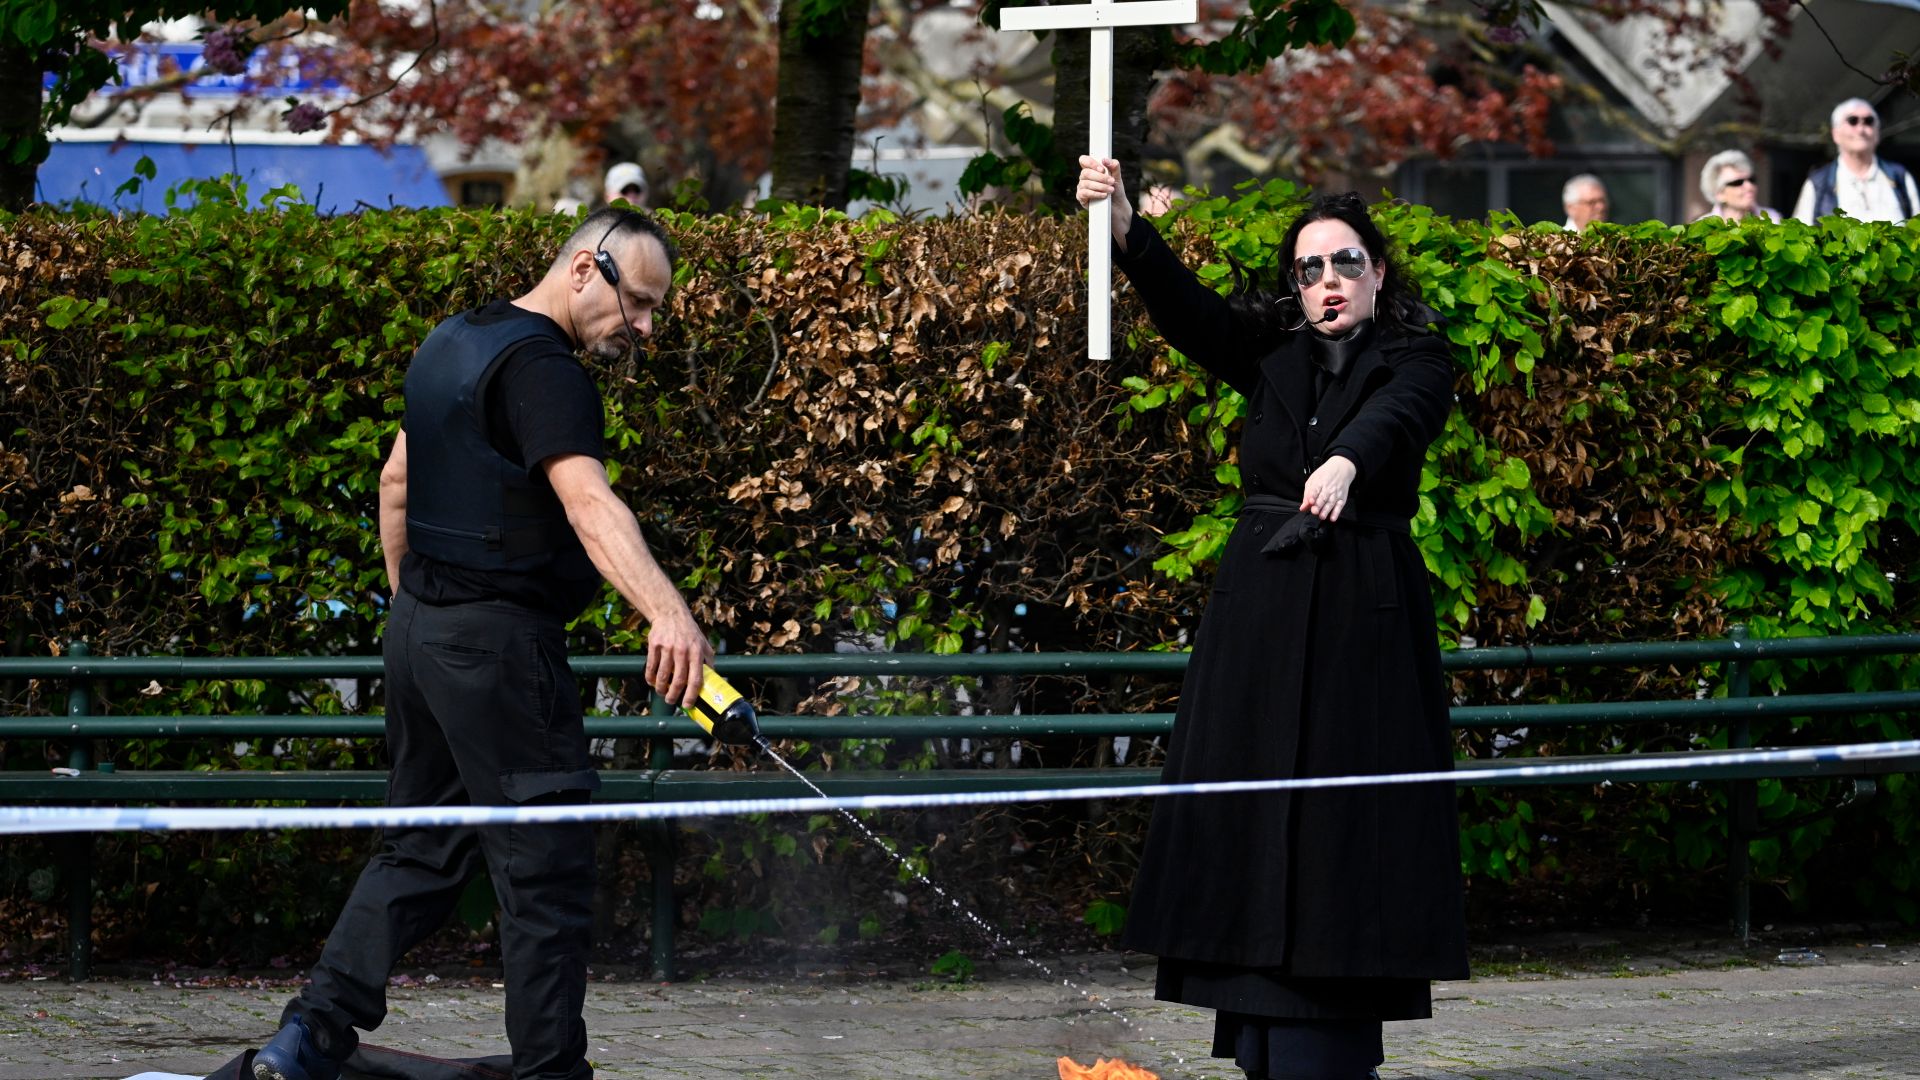 esc in schweden: mann und frau verbrennen koran in malmö